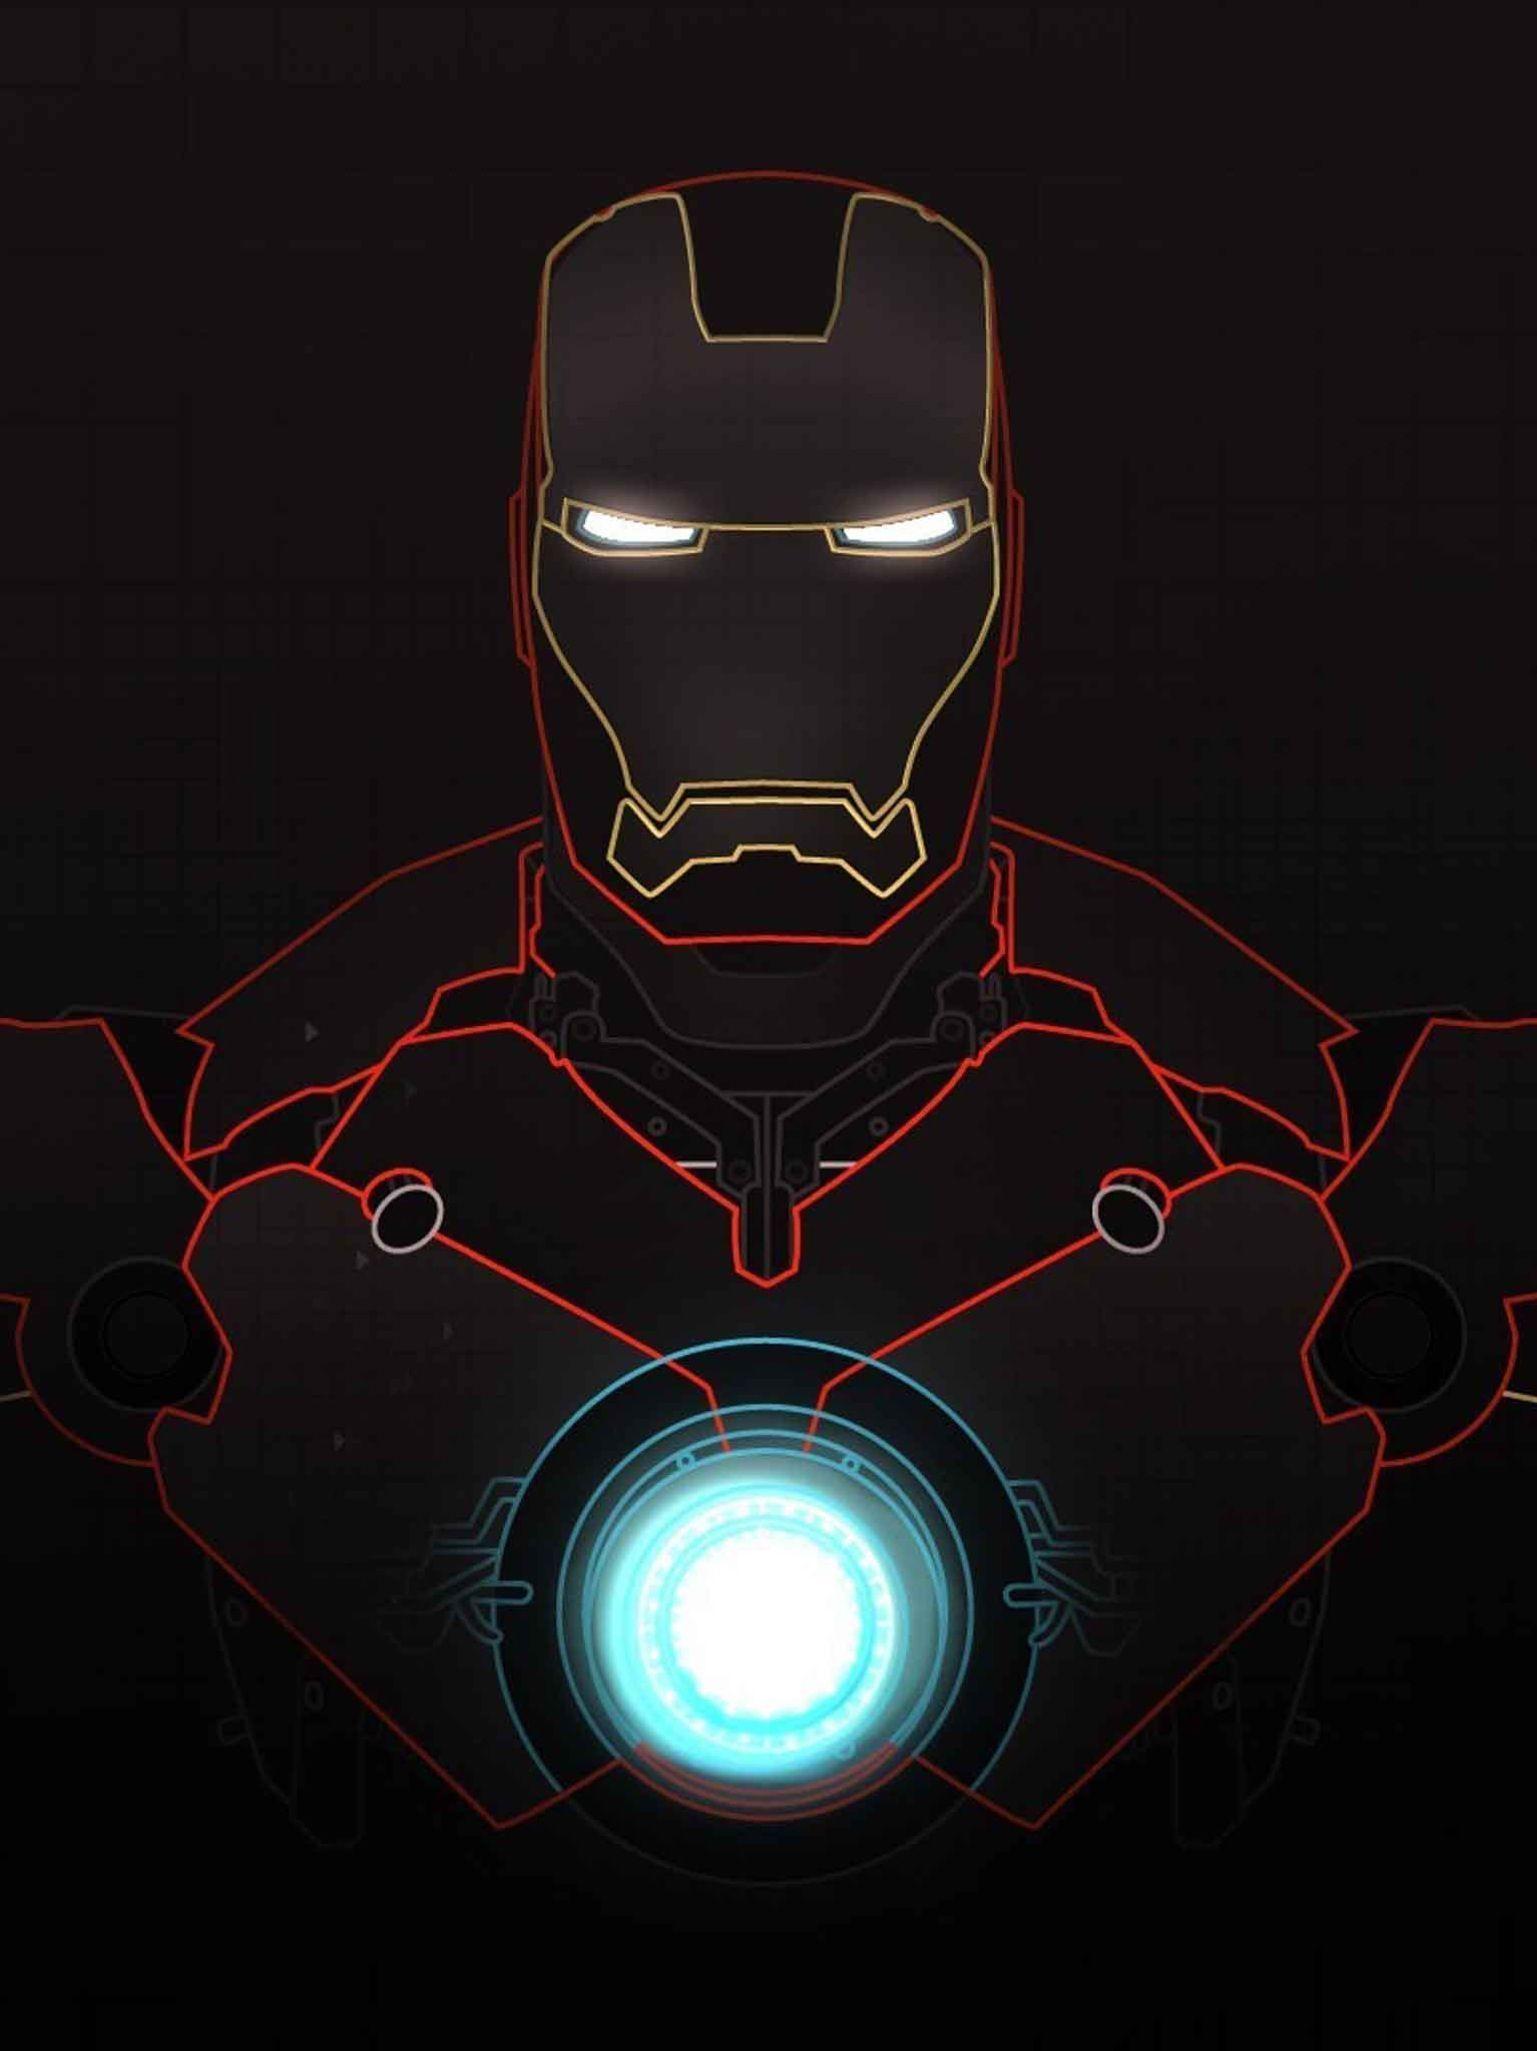 Iron Man iPad wallpaper. Marvel. Iron Man, Iron man wallpaper